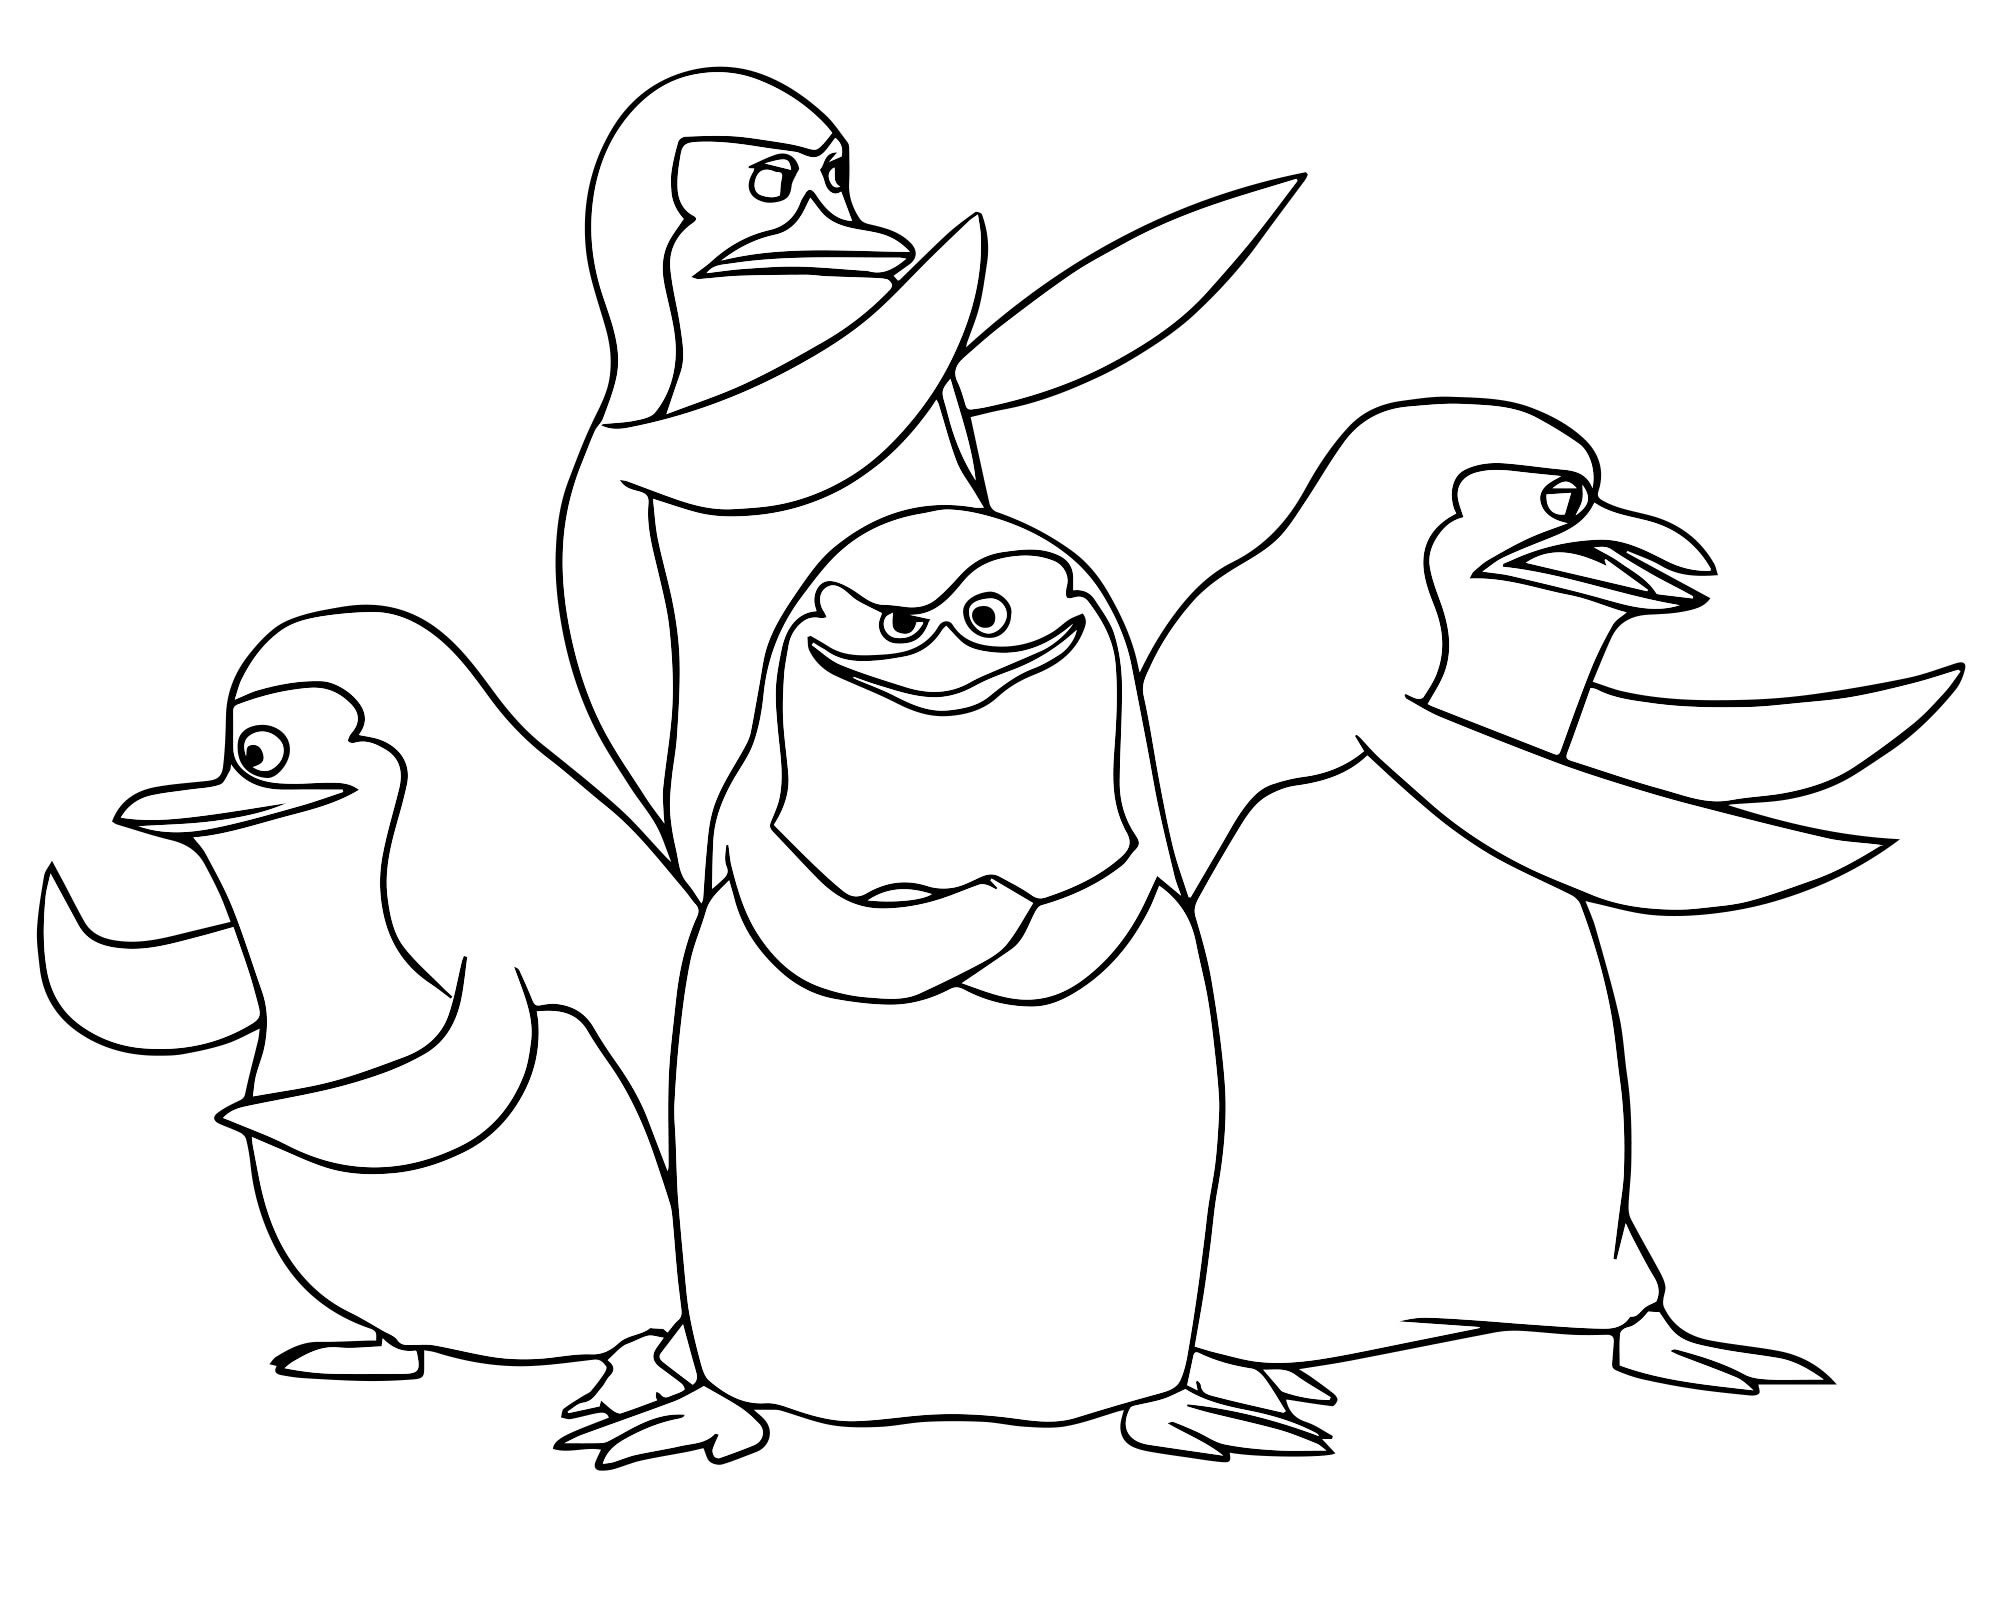 «Пингвины» бесплатная раскраска для детей - мальчиков и девочек